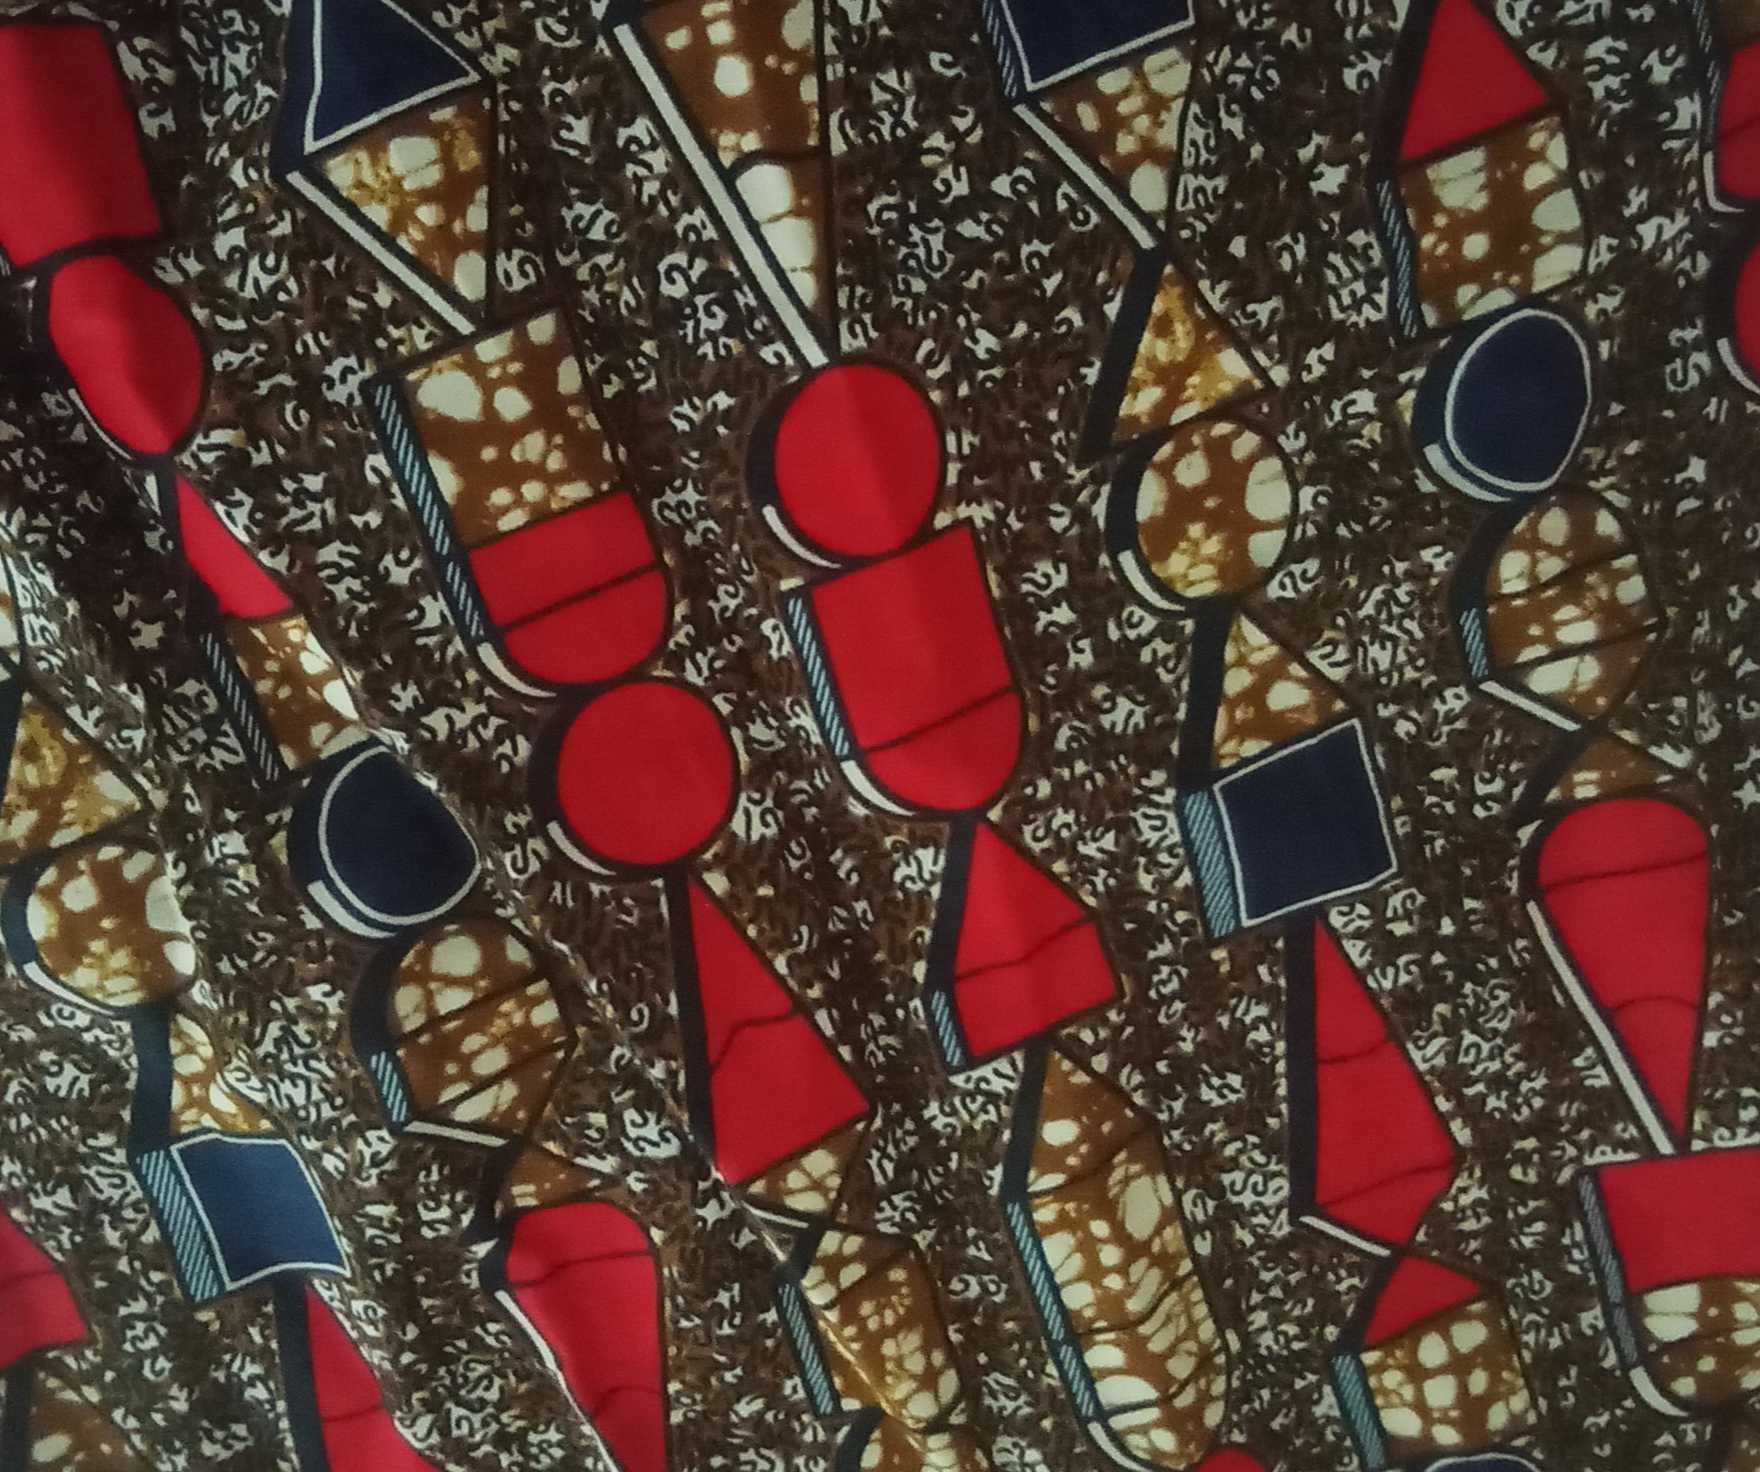 Kente cloth oryginalne ubranie kente z Ghany